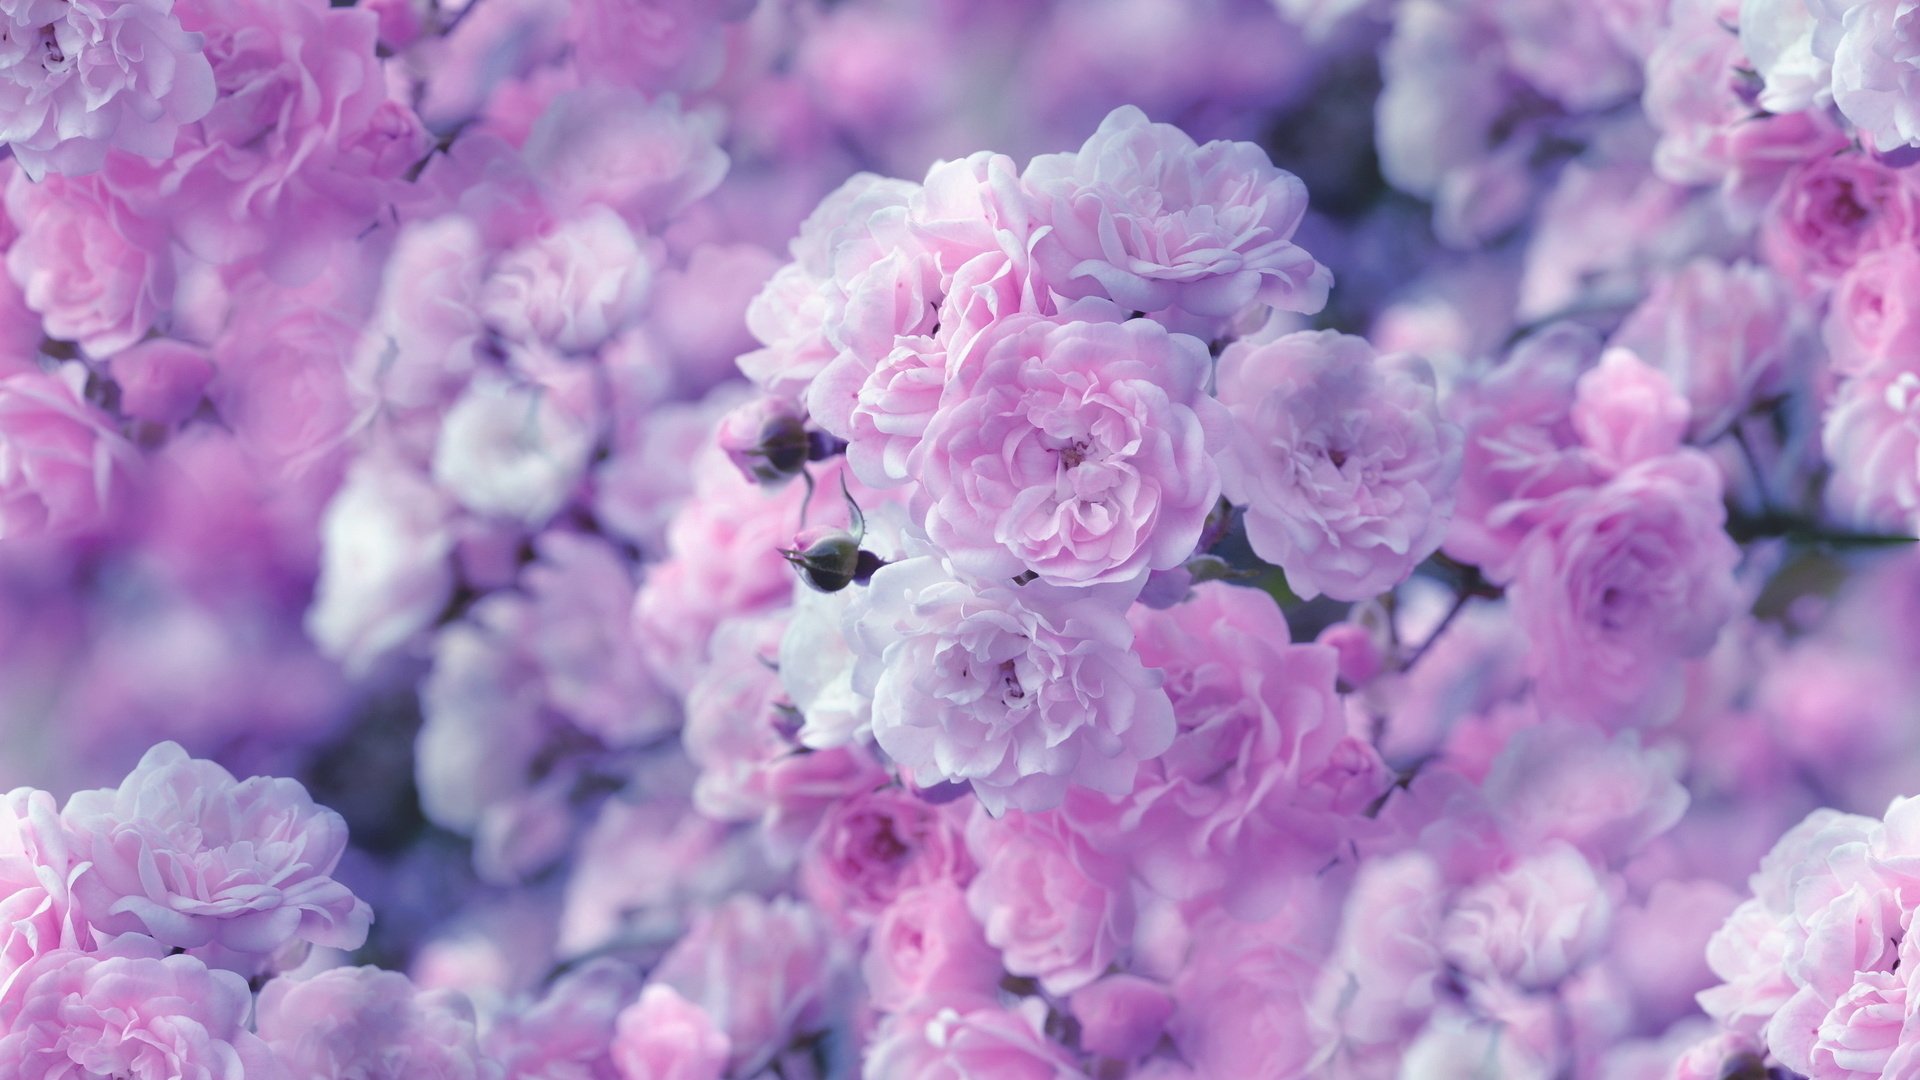 pastell rosen tapete,blume,rosa,violett,lila,blütenblatt